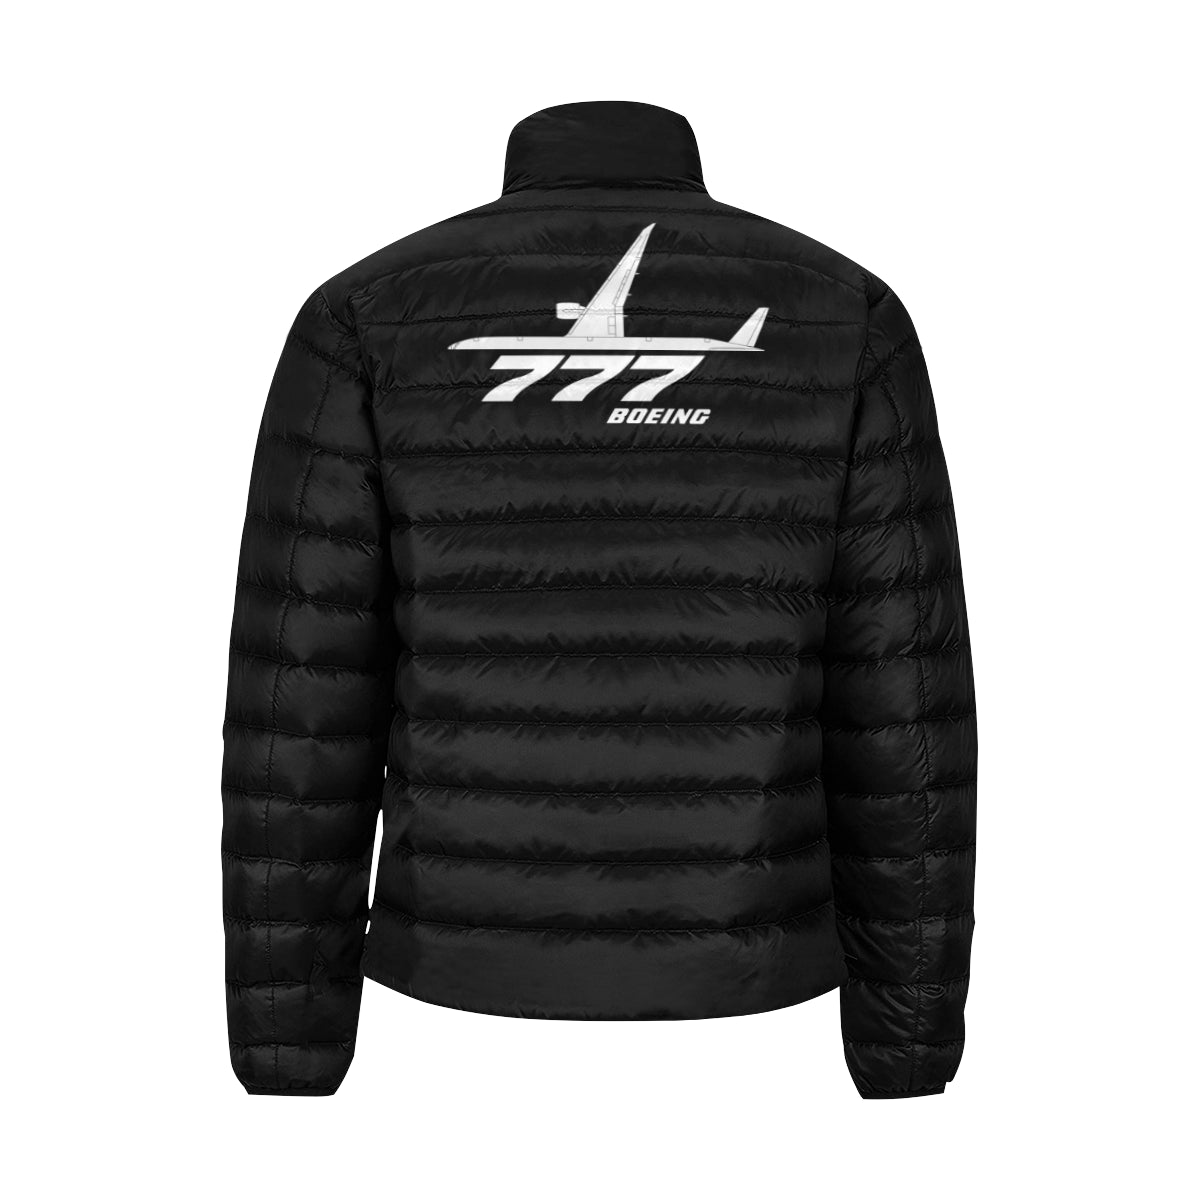 BOEING 777 Men's Stand Collar Padded Jacket e-joyer